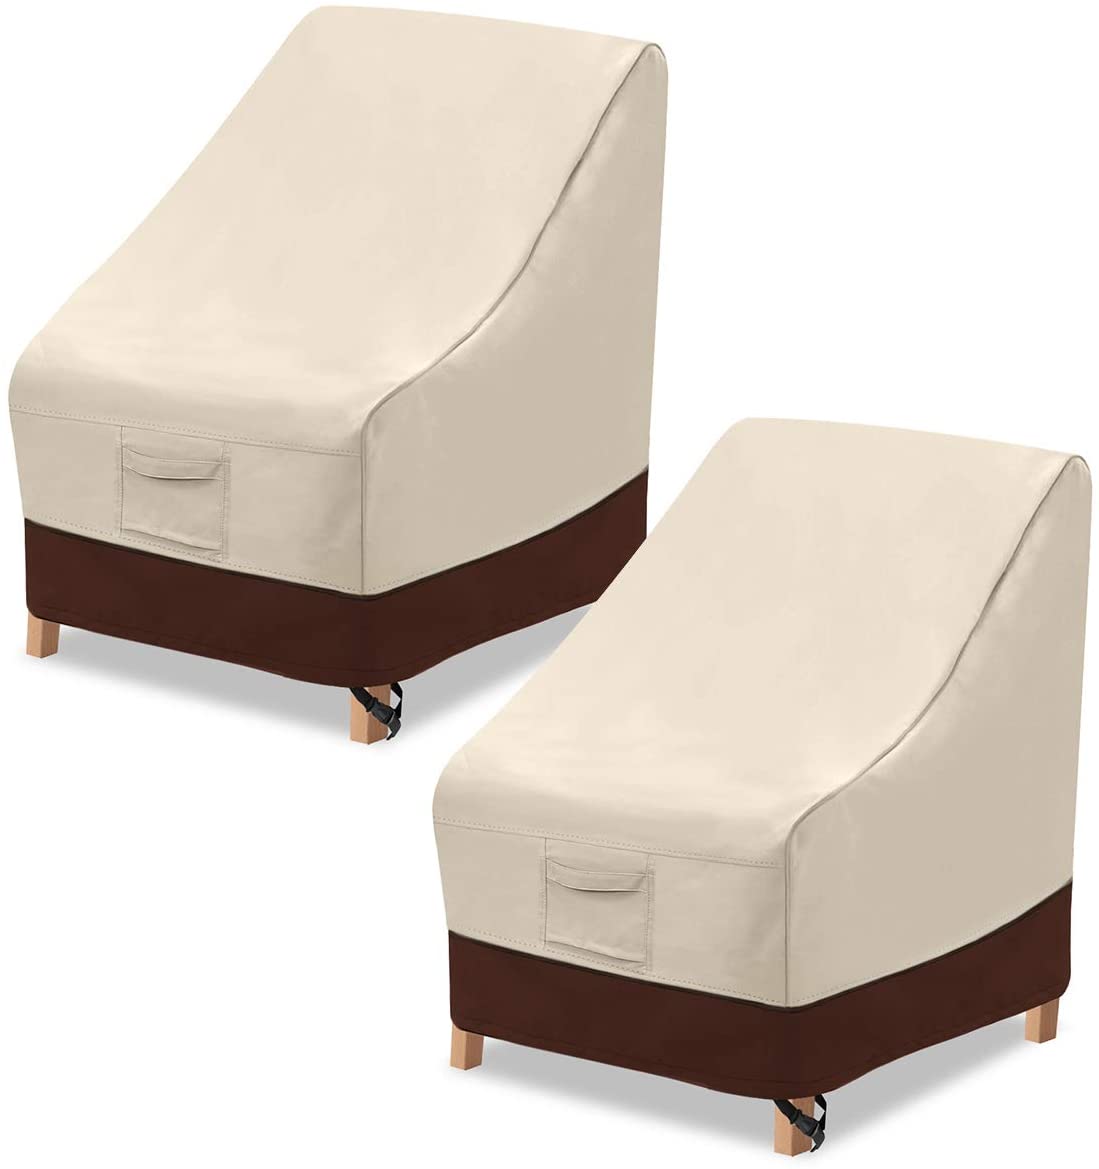 Copertura antipolvere per bordi esterni per mobili per sedie da esterno per divani da giardino Rivestimento in tessuto non tessuto con PE